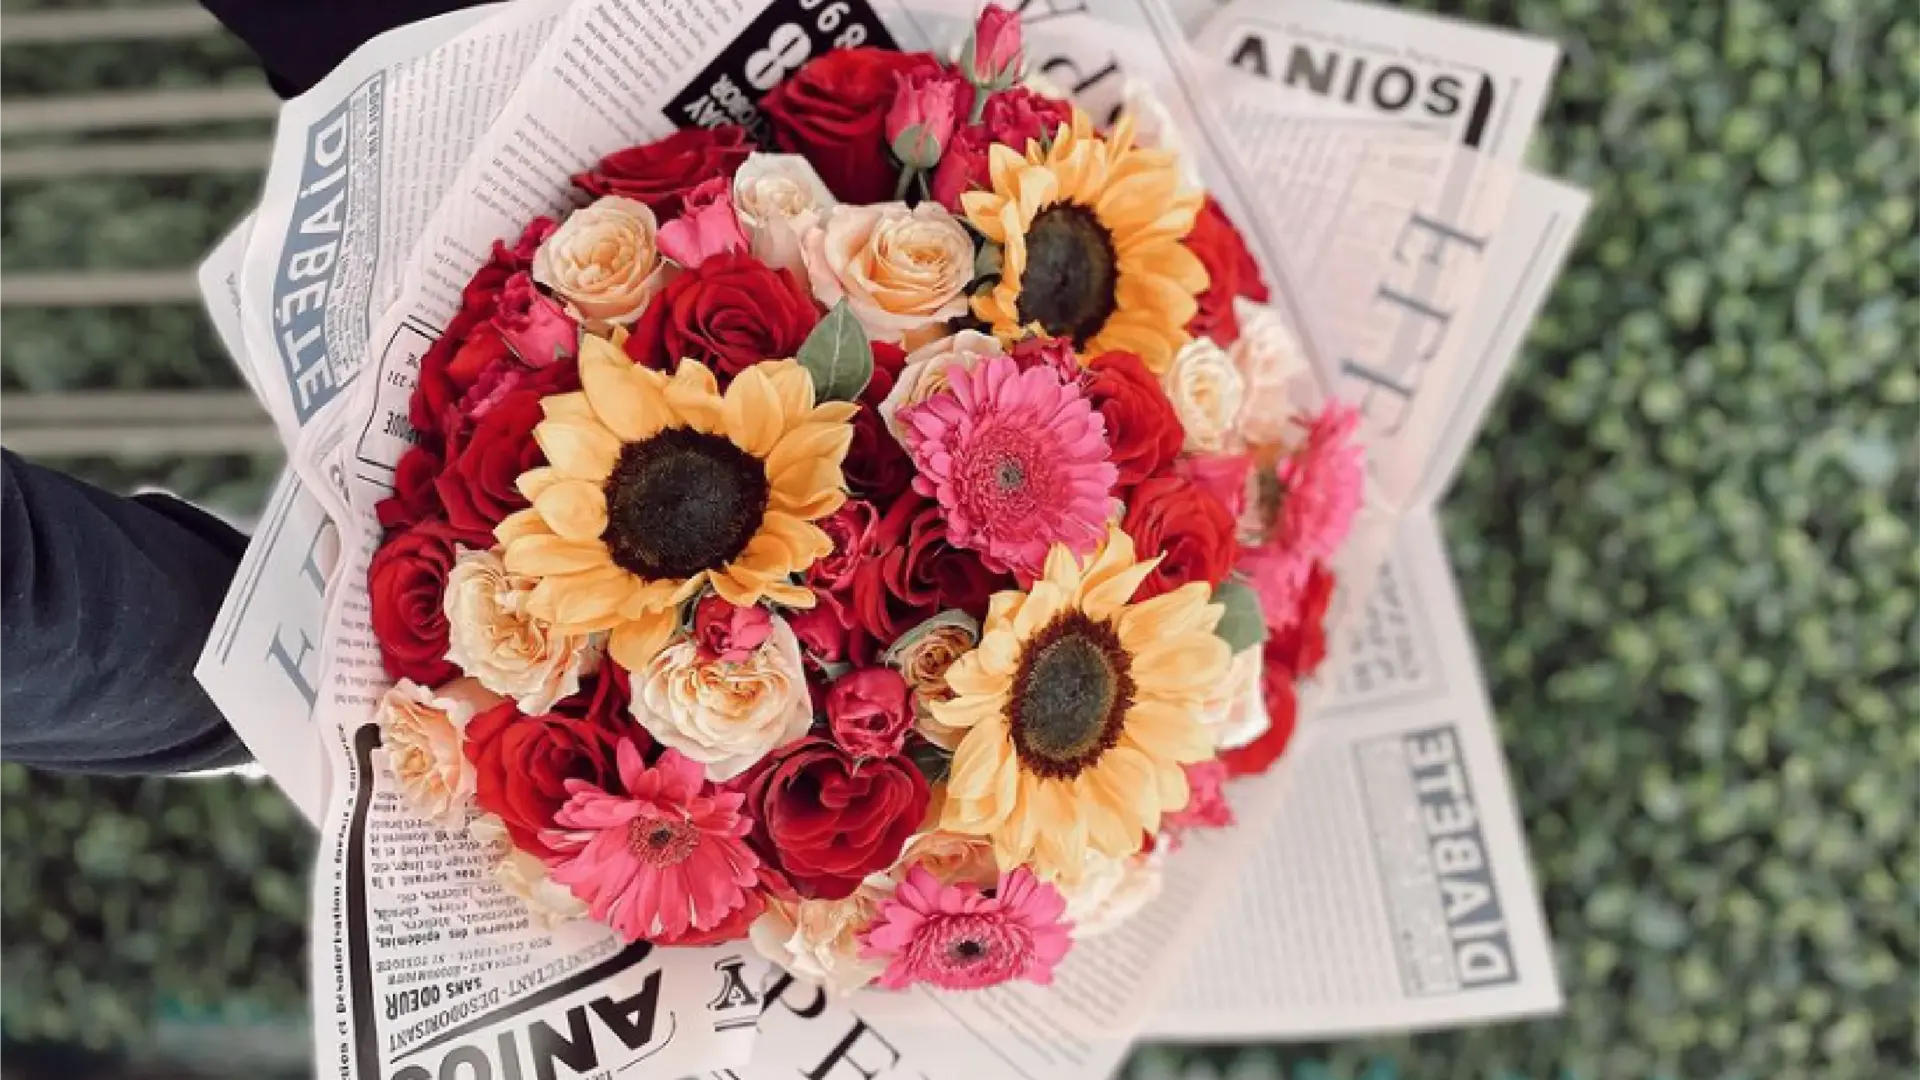 "Rosié" la historia de una floristería que nace de un emprendimiento